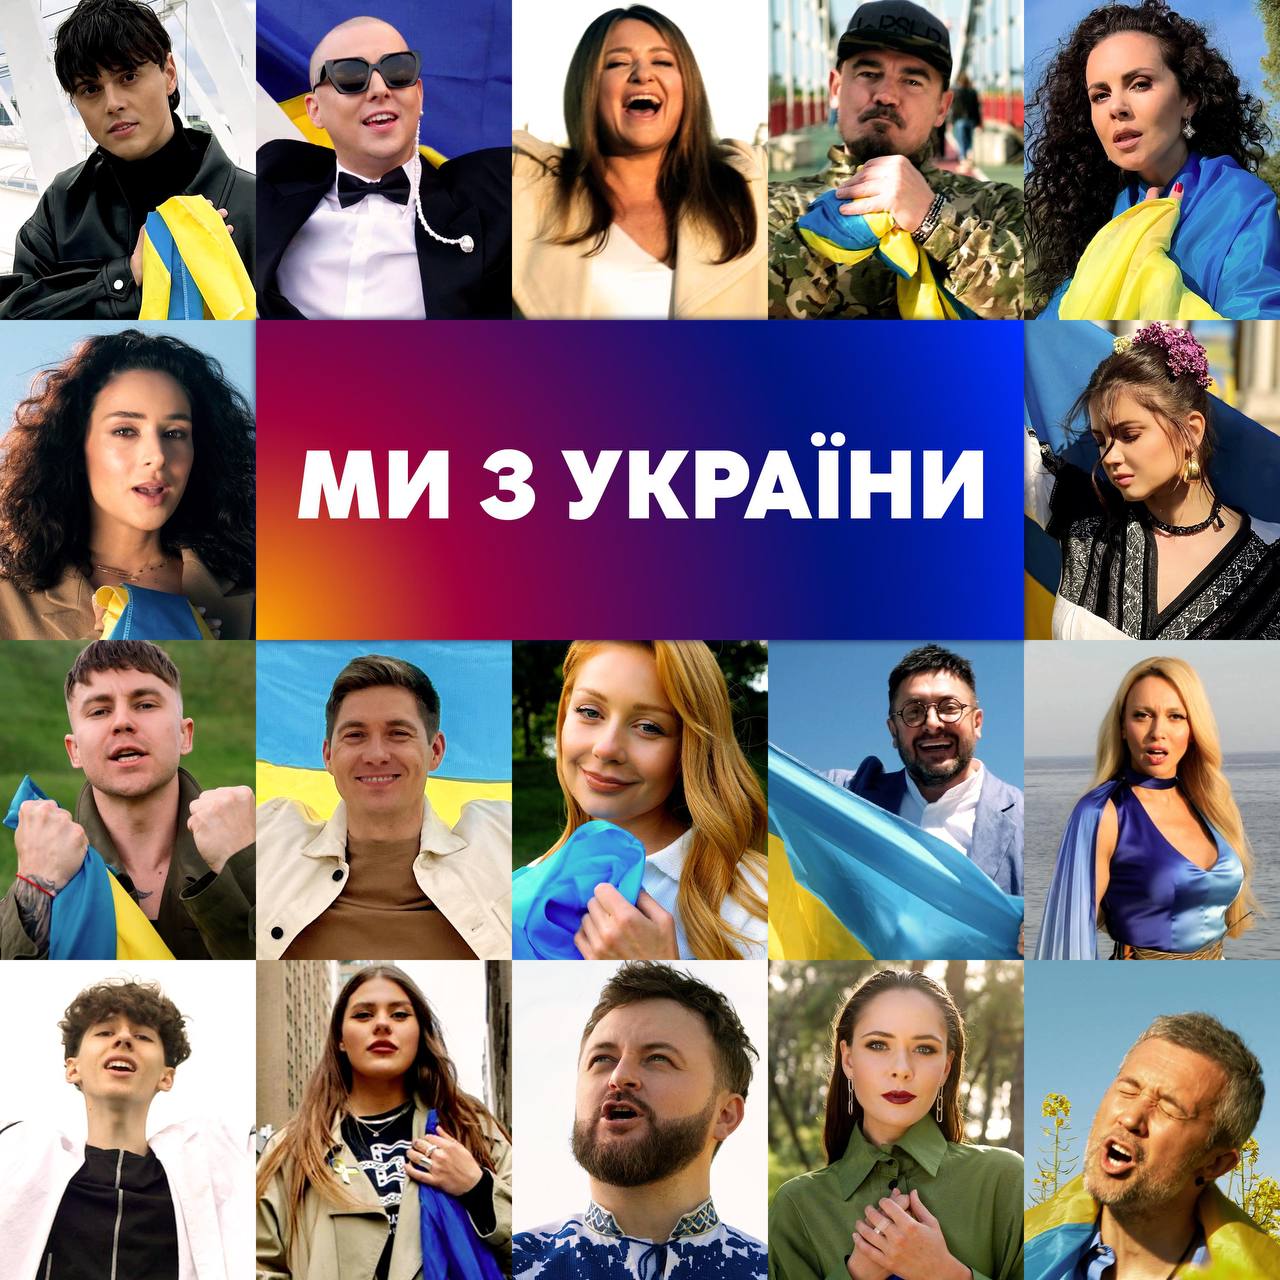 Канал «Україна» об’єднав зірок у патріотичному хіті «Ми з України»